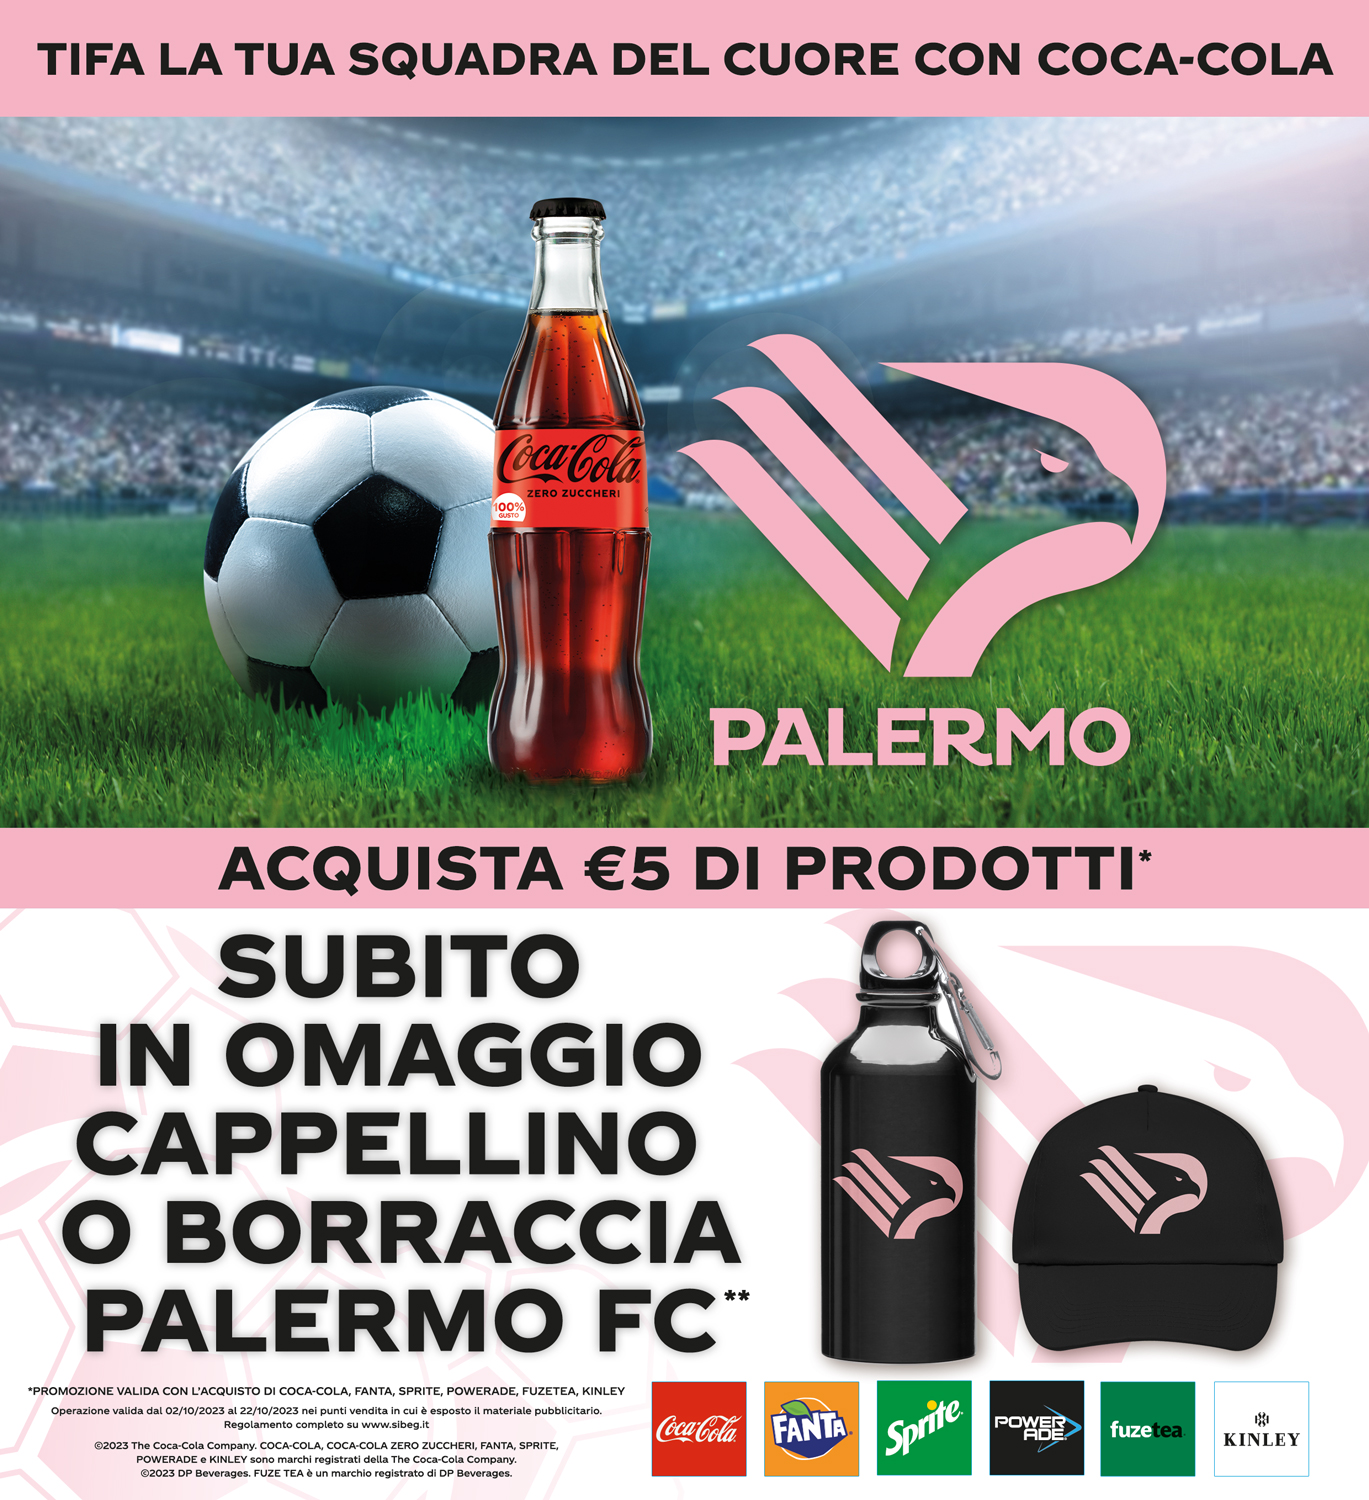 Palermo FC – Tifa la squadra del tuo cuore con Coca-Cola !